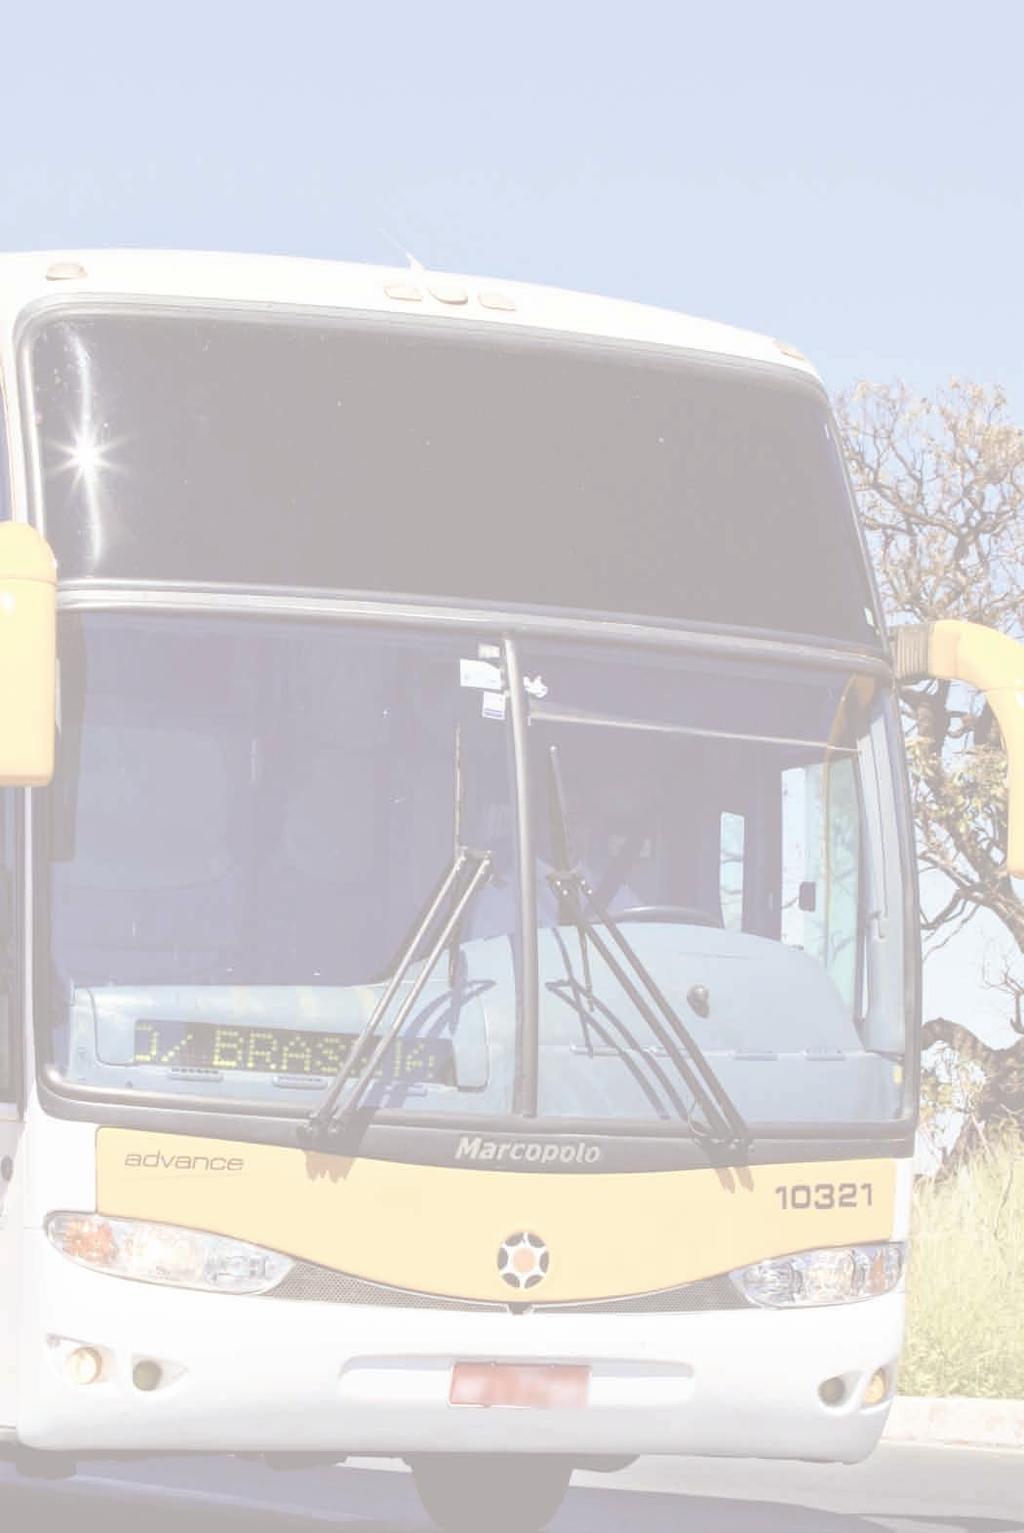 Transporte Rodoviário 4 Média de idade da frota de ônibus urbanos cai para 4,7 anos em 2014 O Anuário CNT do Transporte revela que os ônibus urbanos estão mais novos.